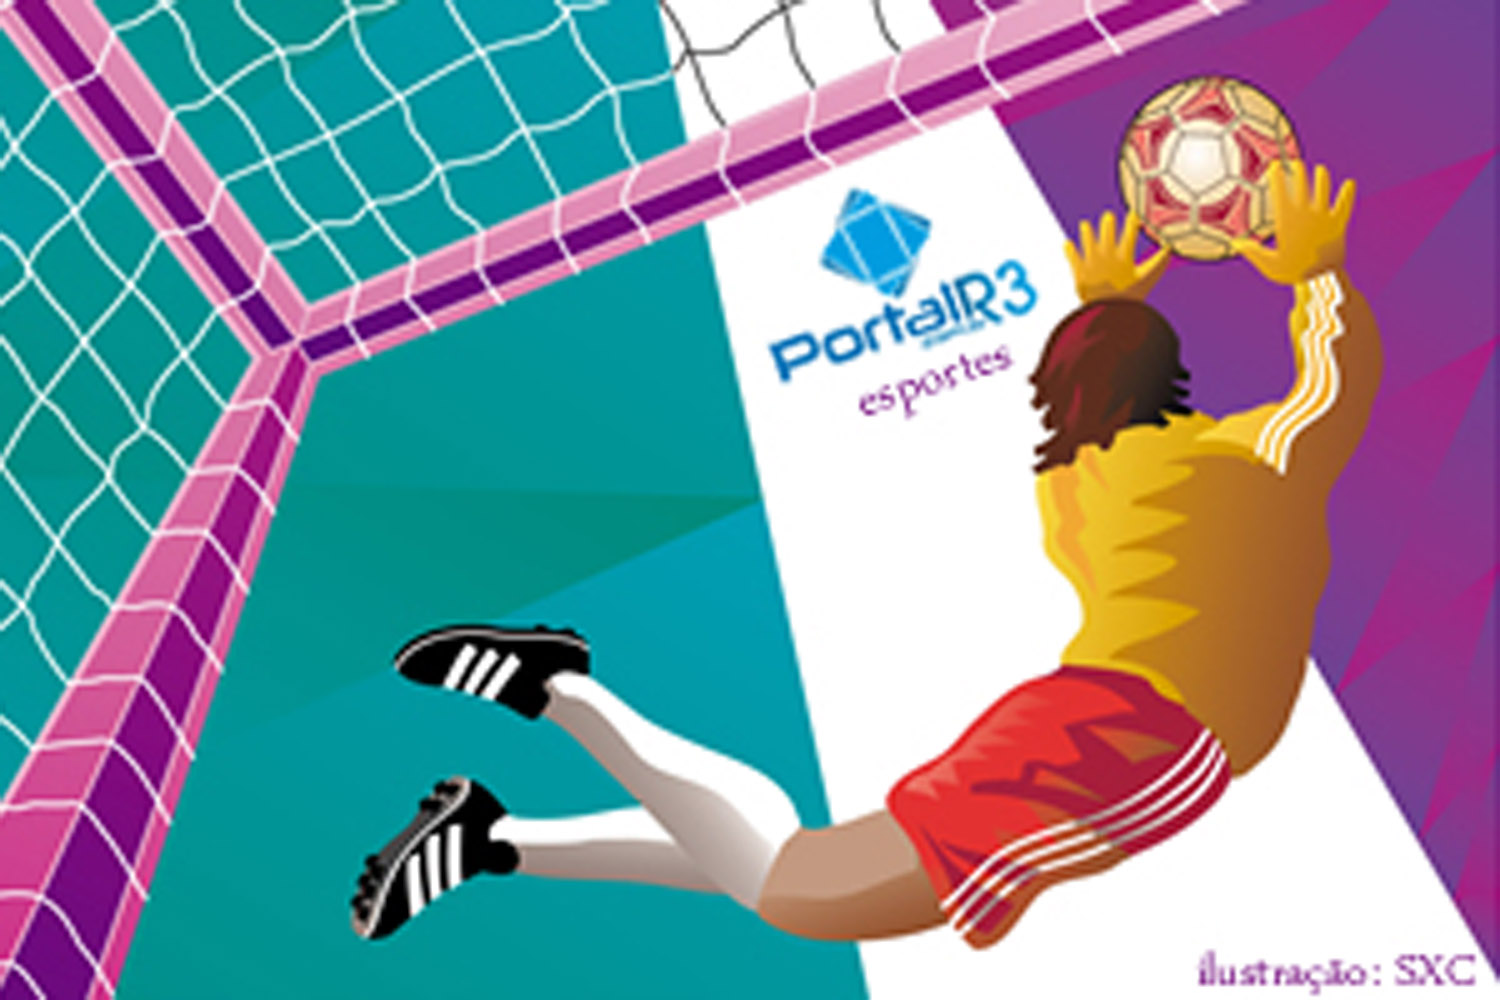 Veja o placa do futebol de Pinda deste fim de semana pelo Portal R3